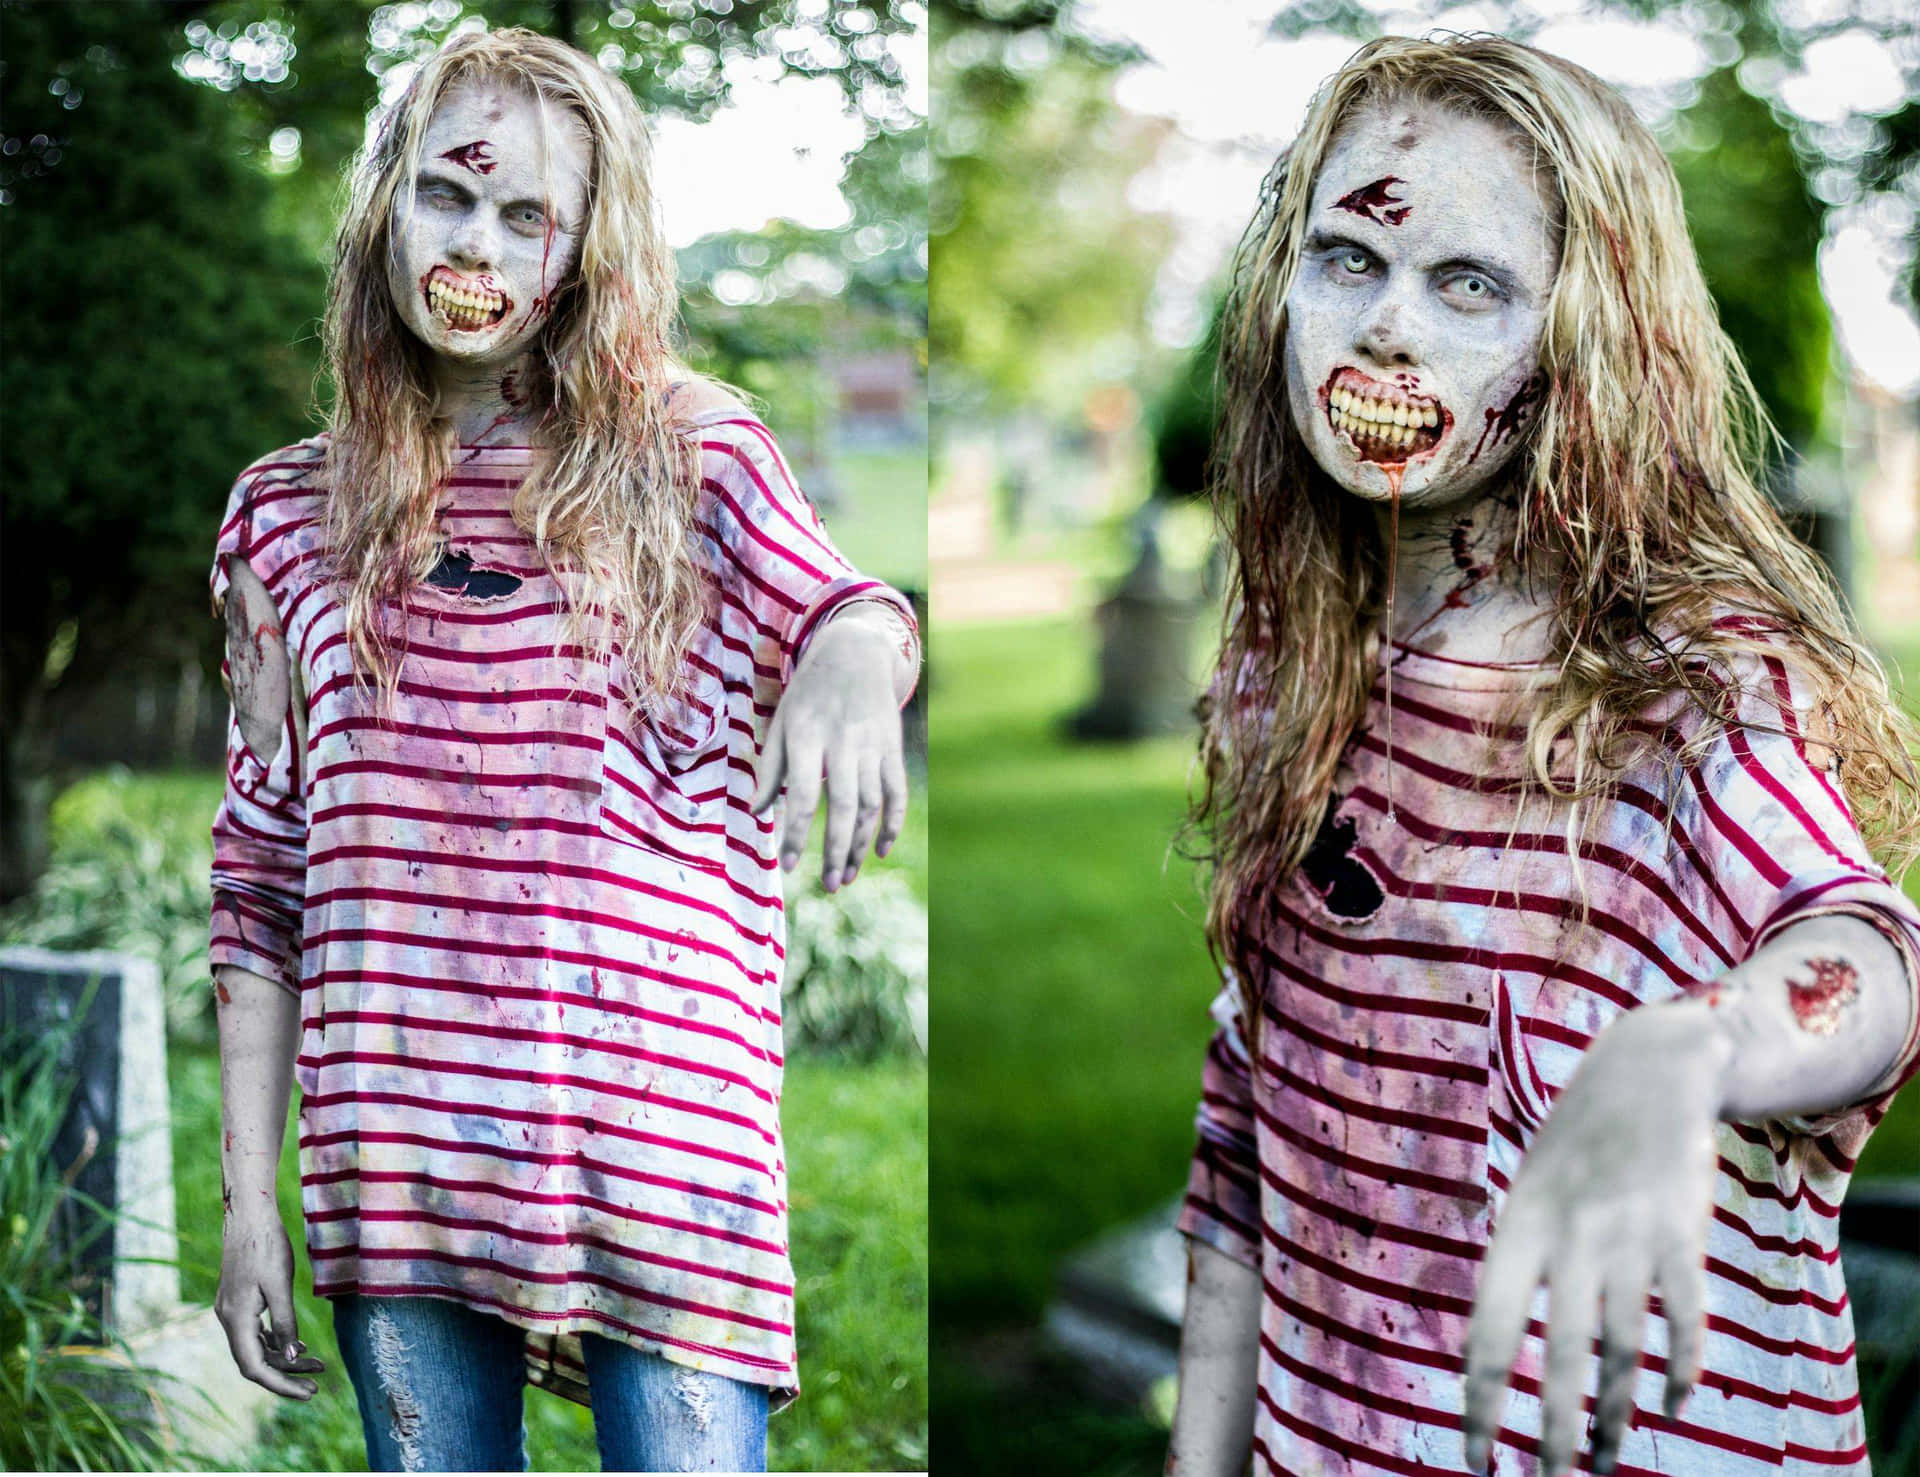 Enkvinna Klädd Som En Zombie Står På En Kyrkogård.